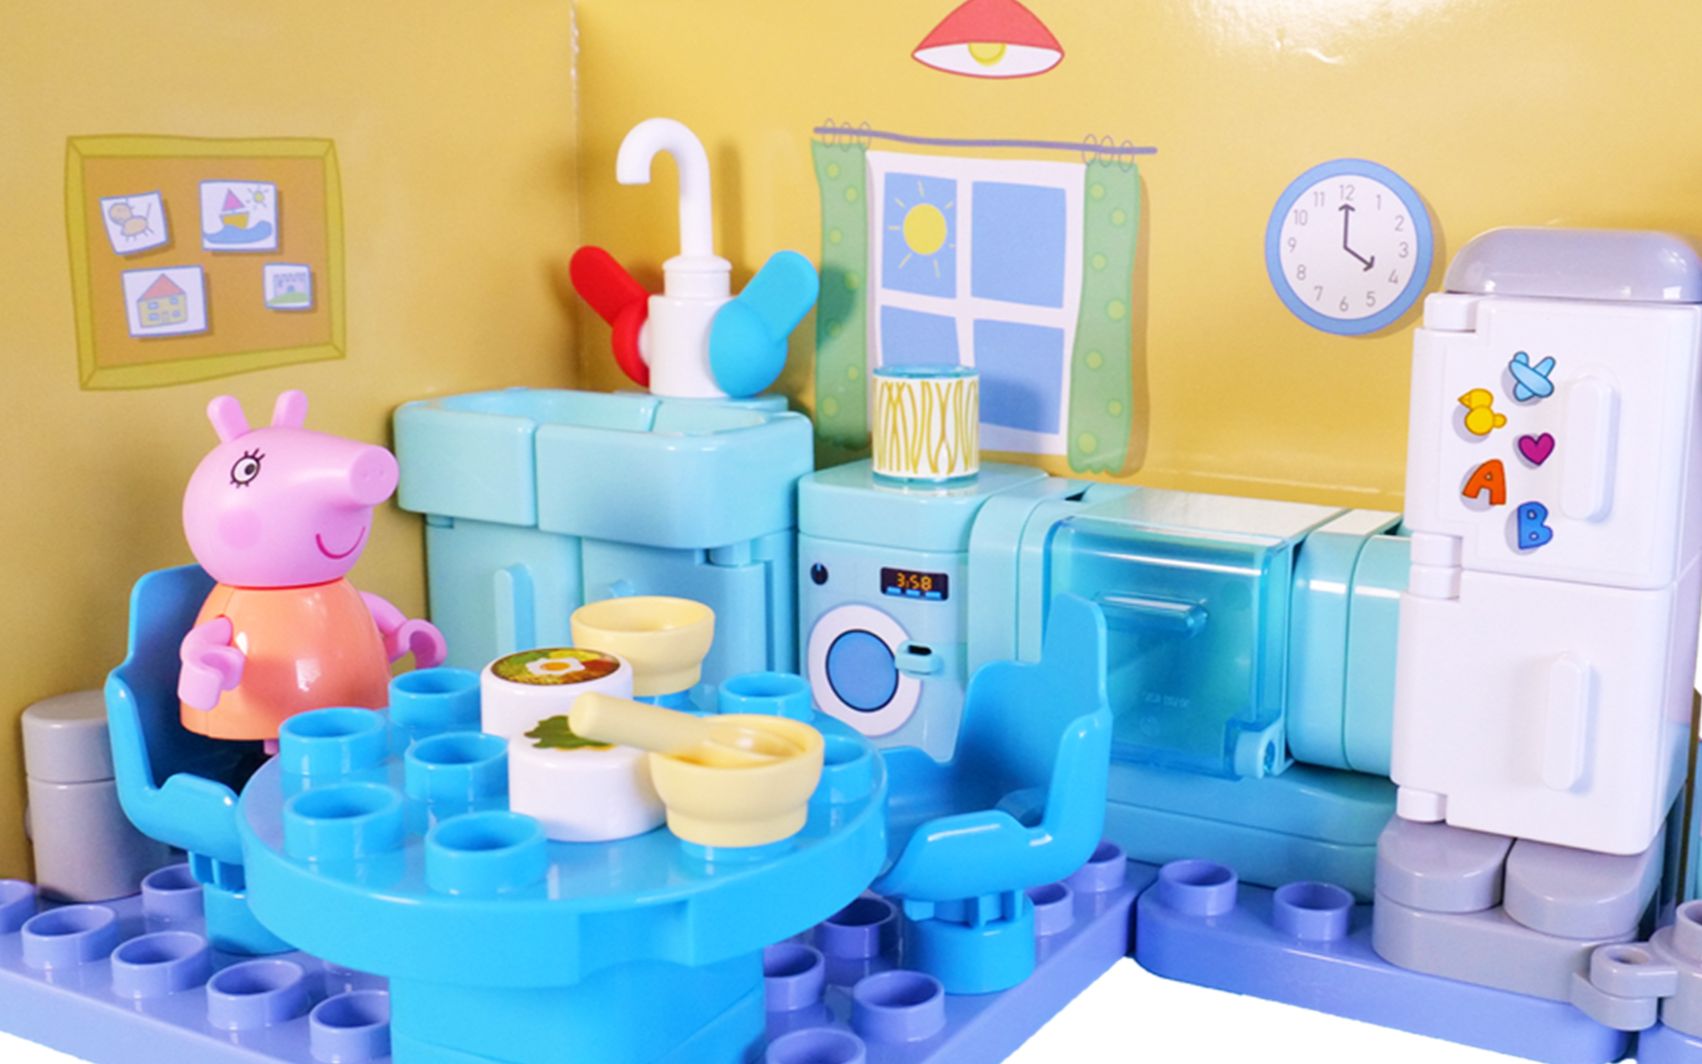 “积木玩具秀”之早教视频:小猪佩奇一家